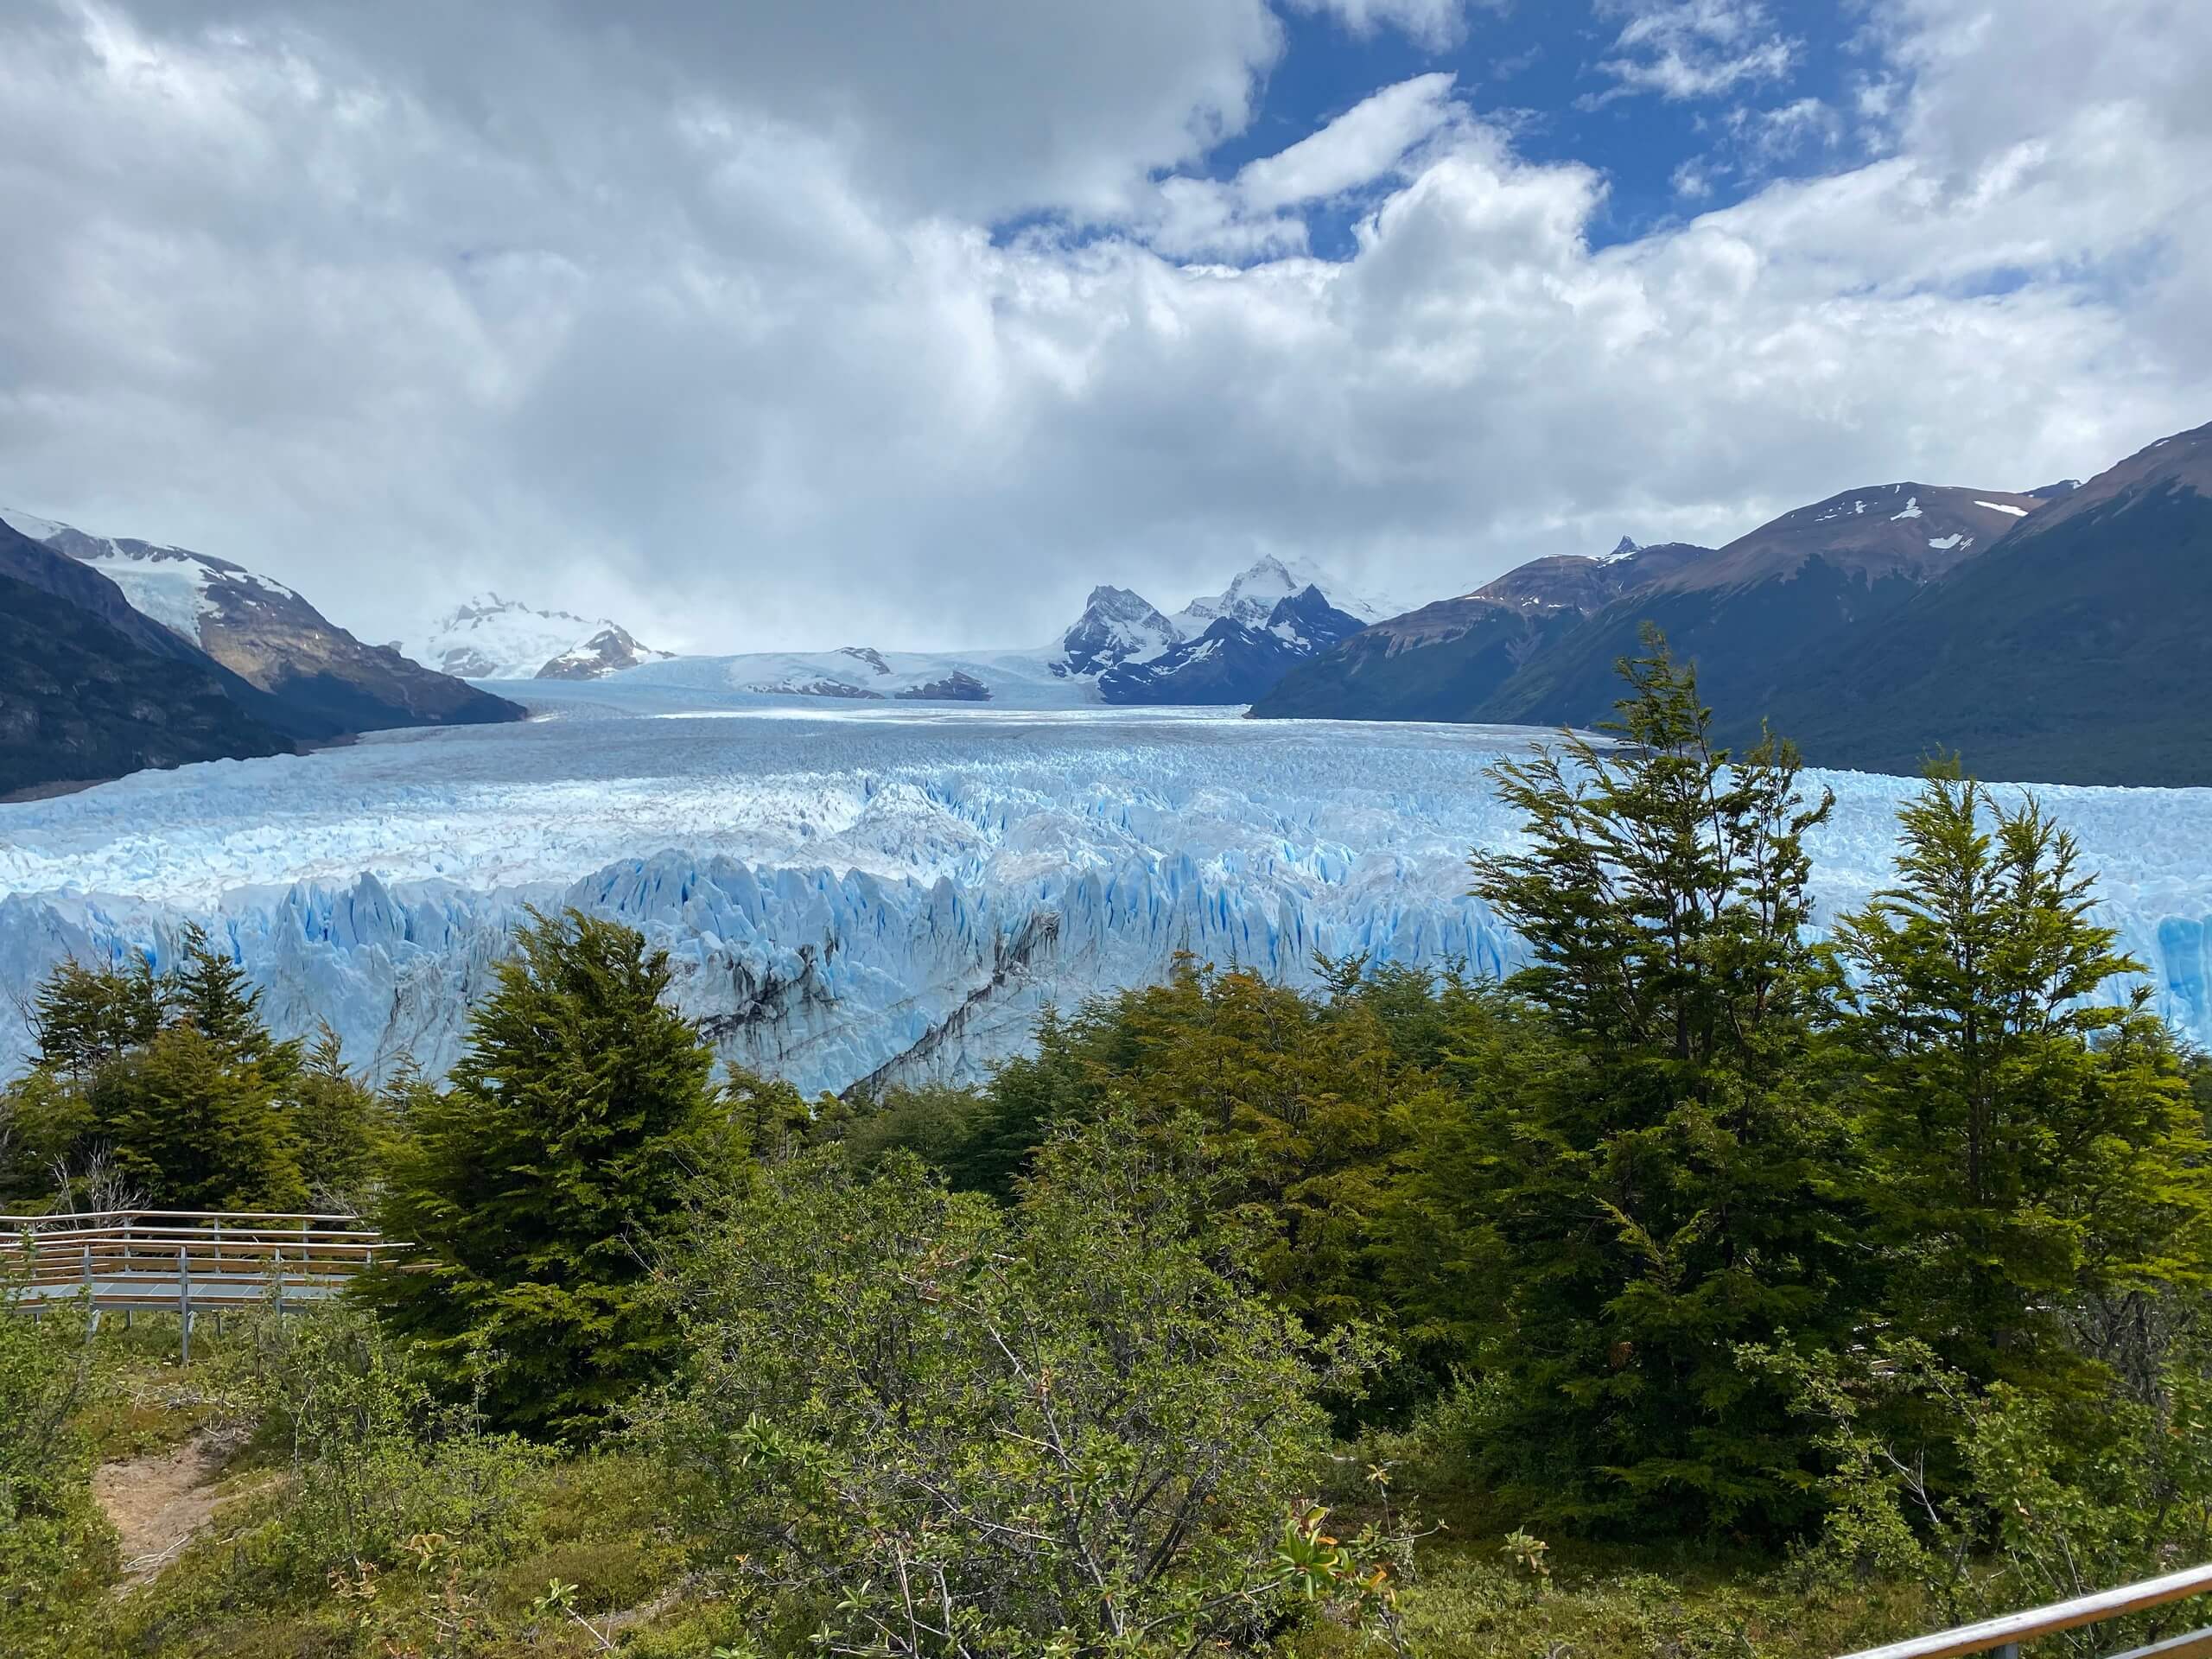 Cloudy day over Perito Moreno Glacier